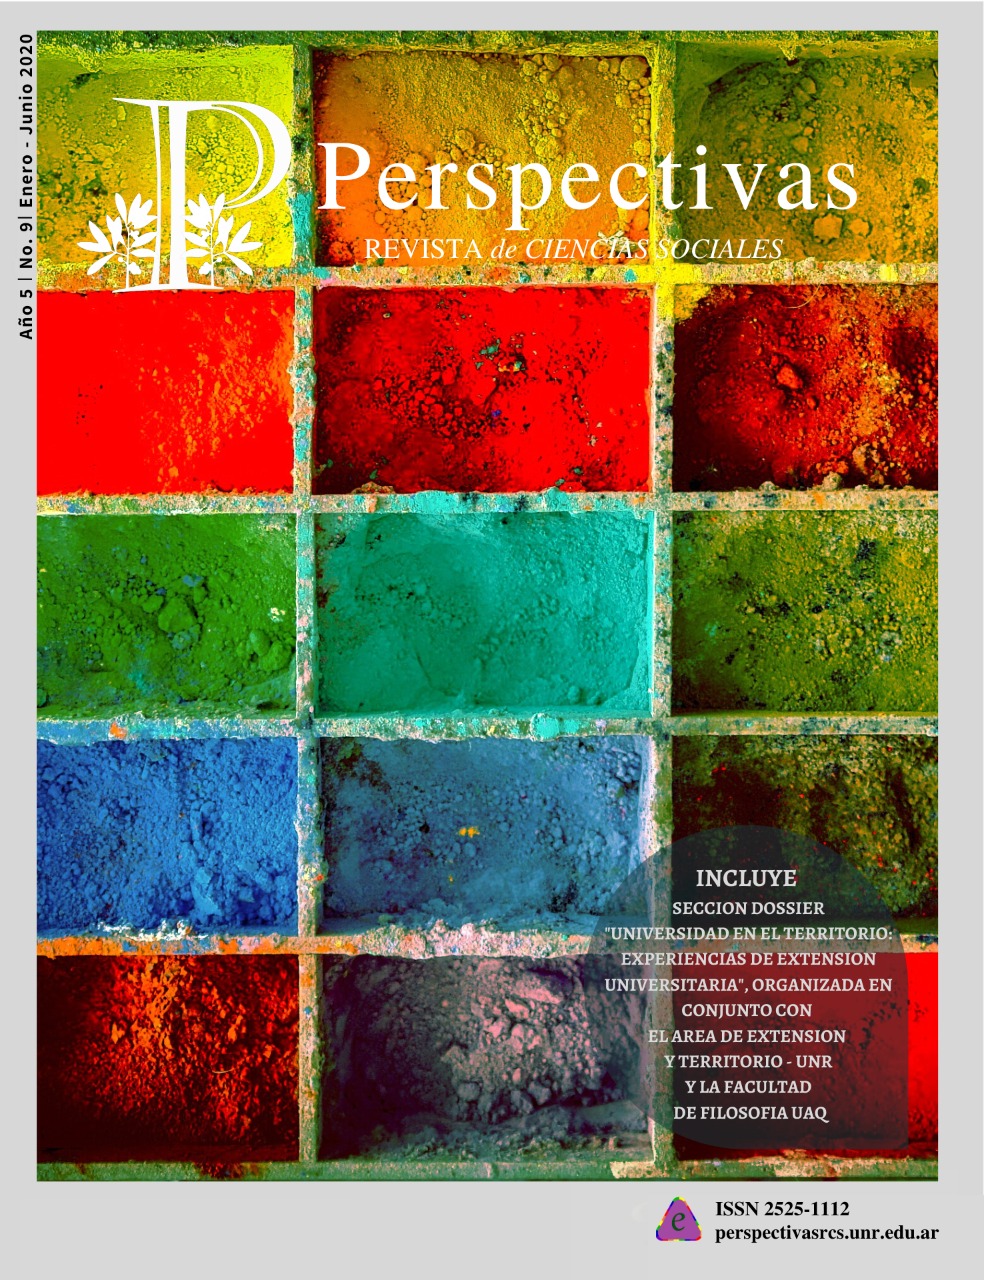 					View Vol. 5 No. 9 (2020): Perspectivas Revista de Ciencias Sociales No. 9 Enero-Junio  2020
				